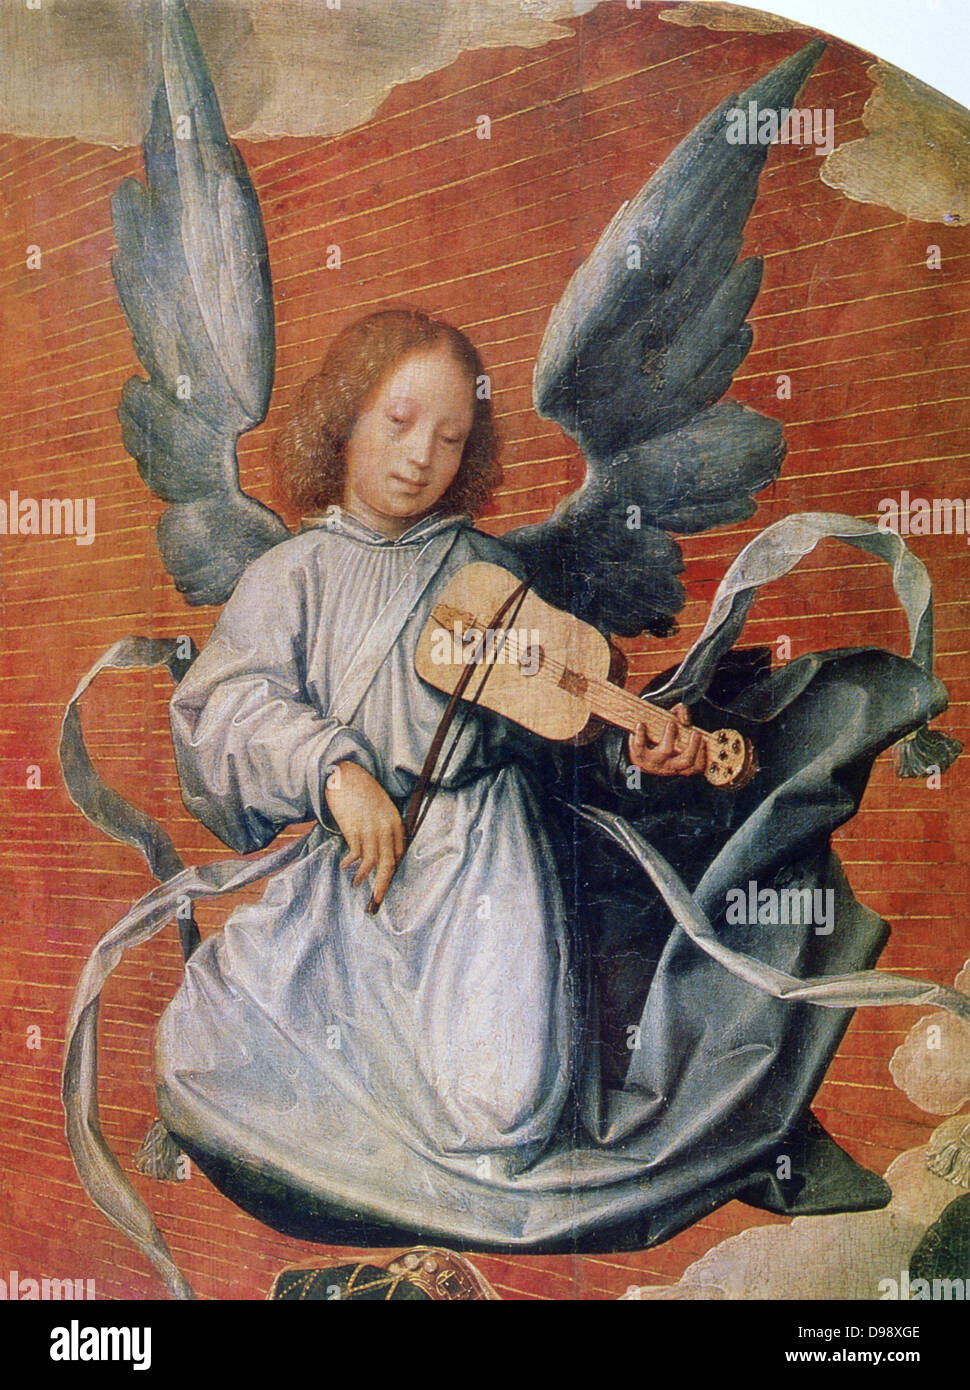 Angelo suonare una chitarra con un archetto (viola da braccio?). "La Vergine in gloria" (dettaglio), 1524. Jan Provost (1465-1529) Netherlandish artista. Olio su tela. Musica musicista ali Nord del Rinascimento Foto Stock